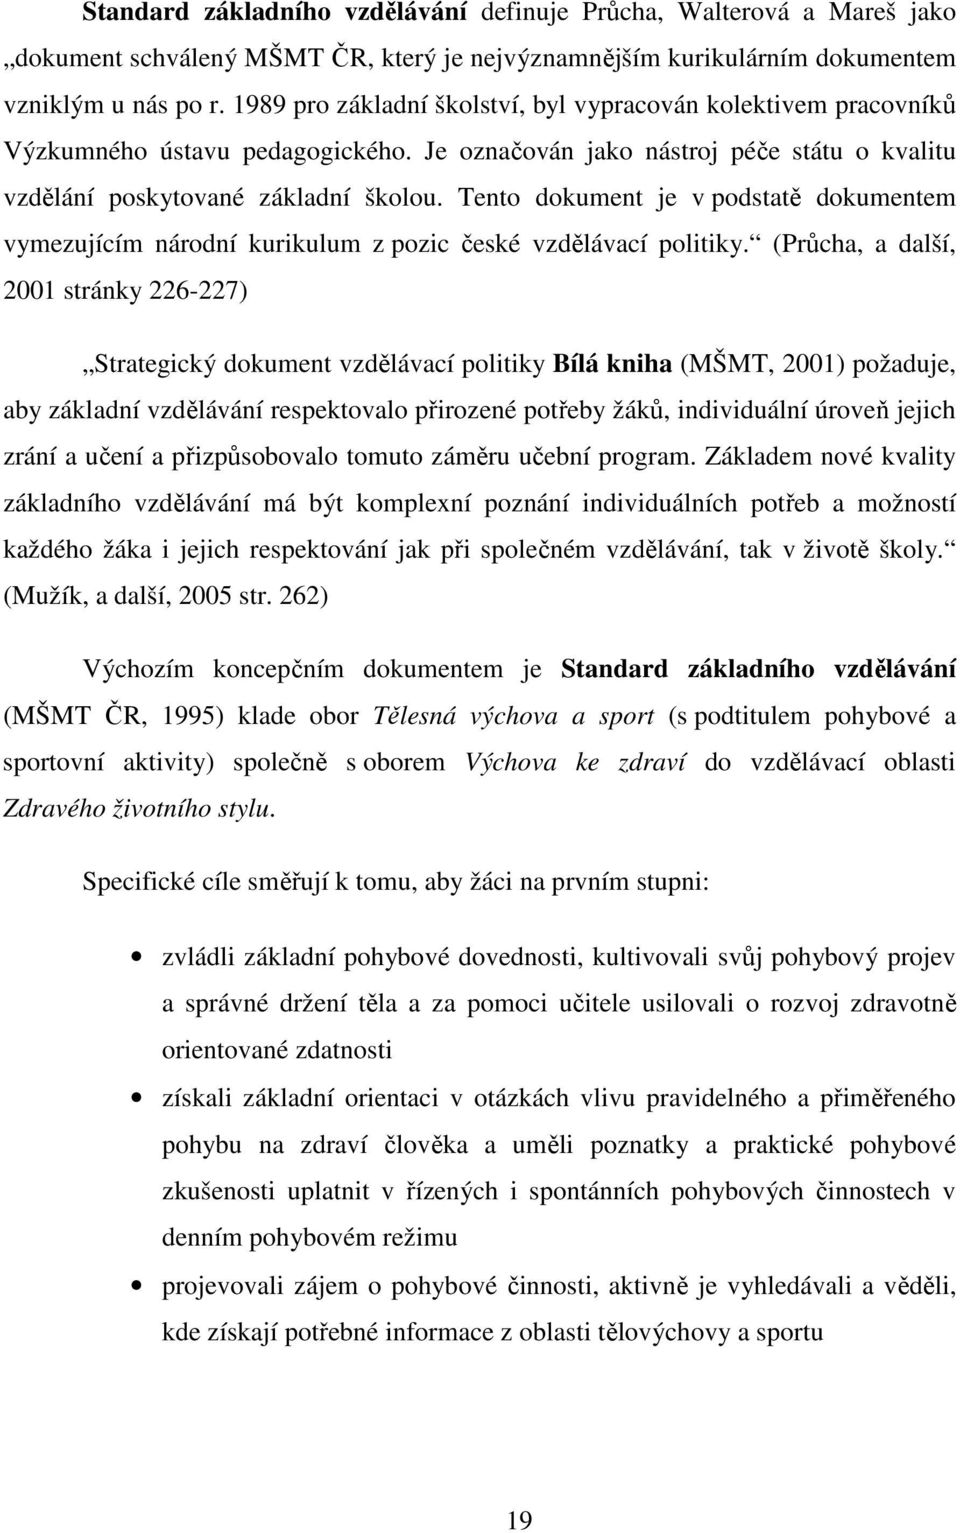 Tento dokument je v podstatě dokumentem vymezujícím národní kurikulum z pozic české vzdělávací politiky.